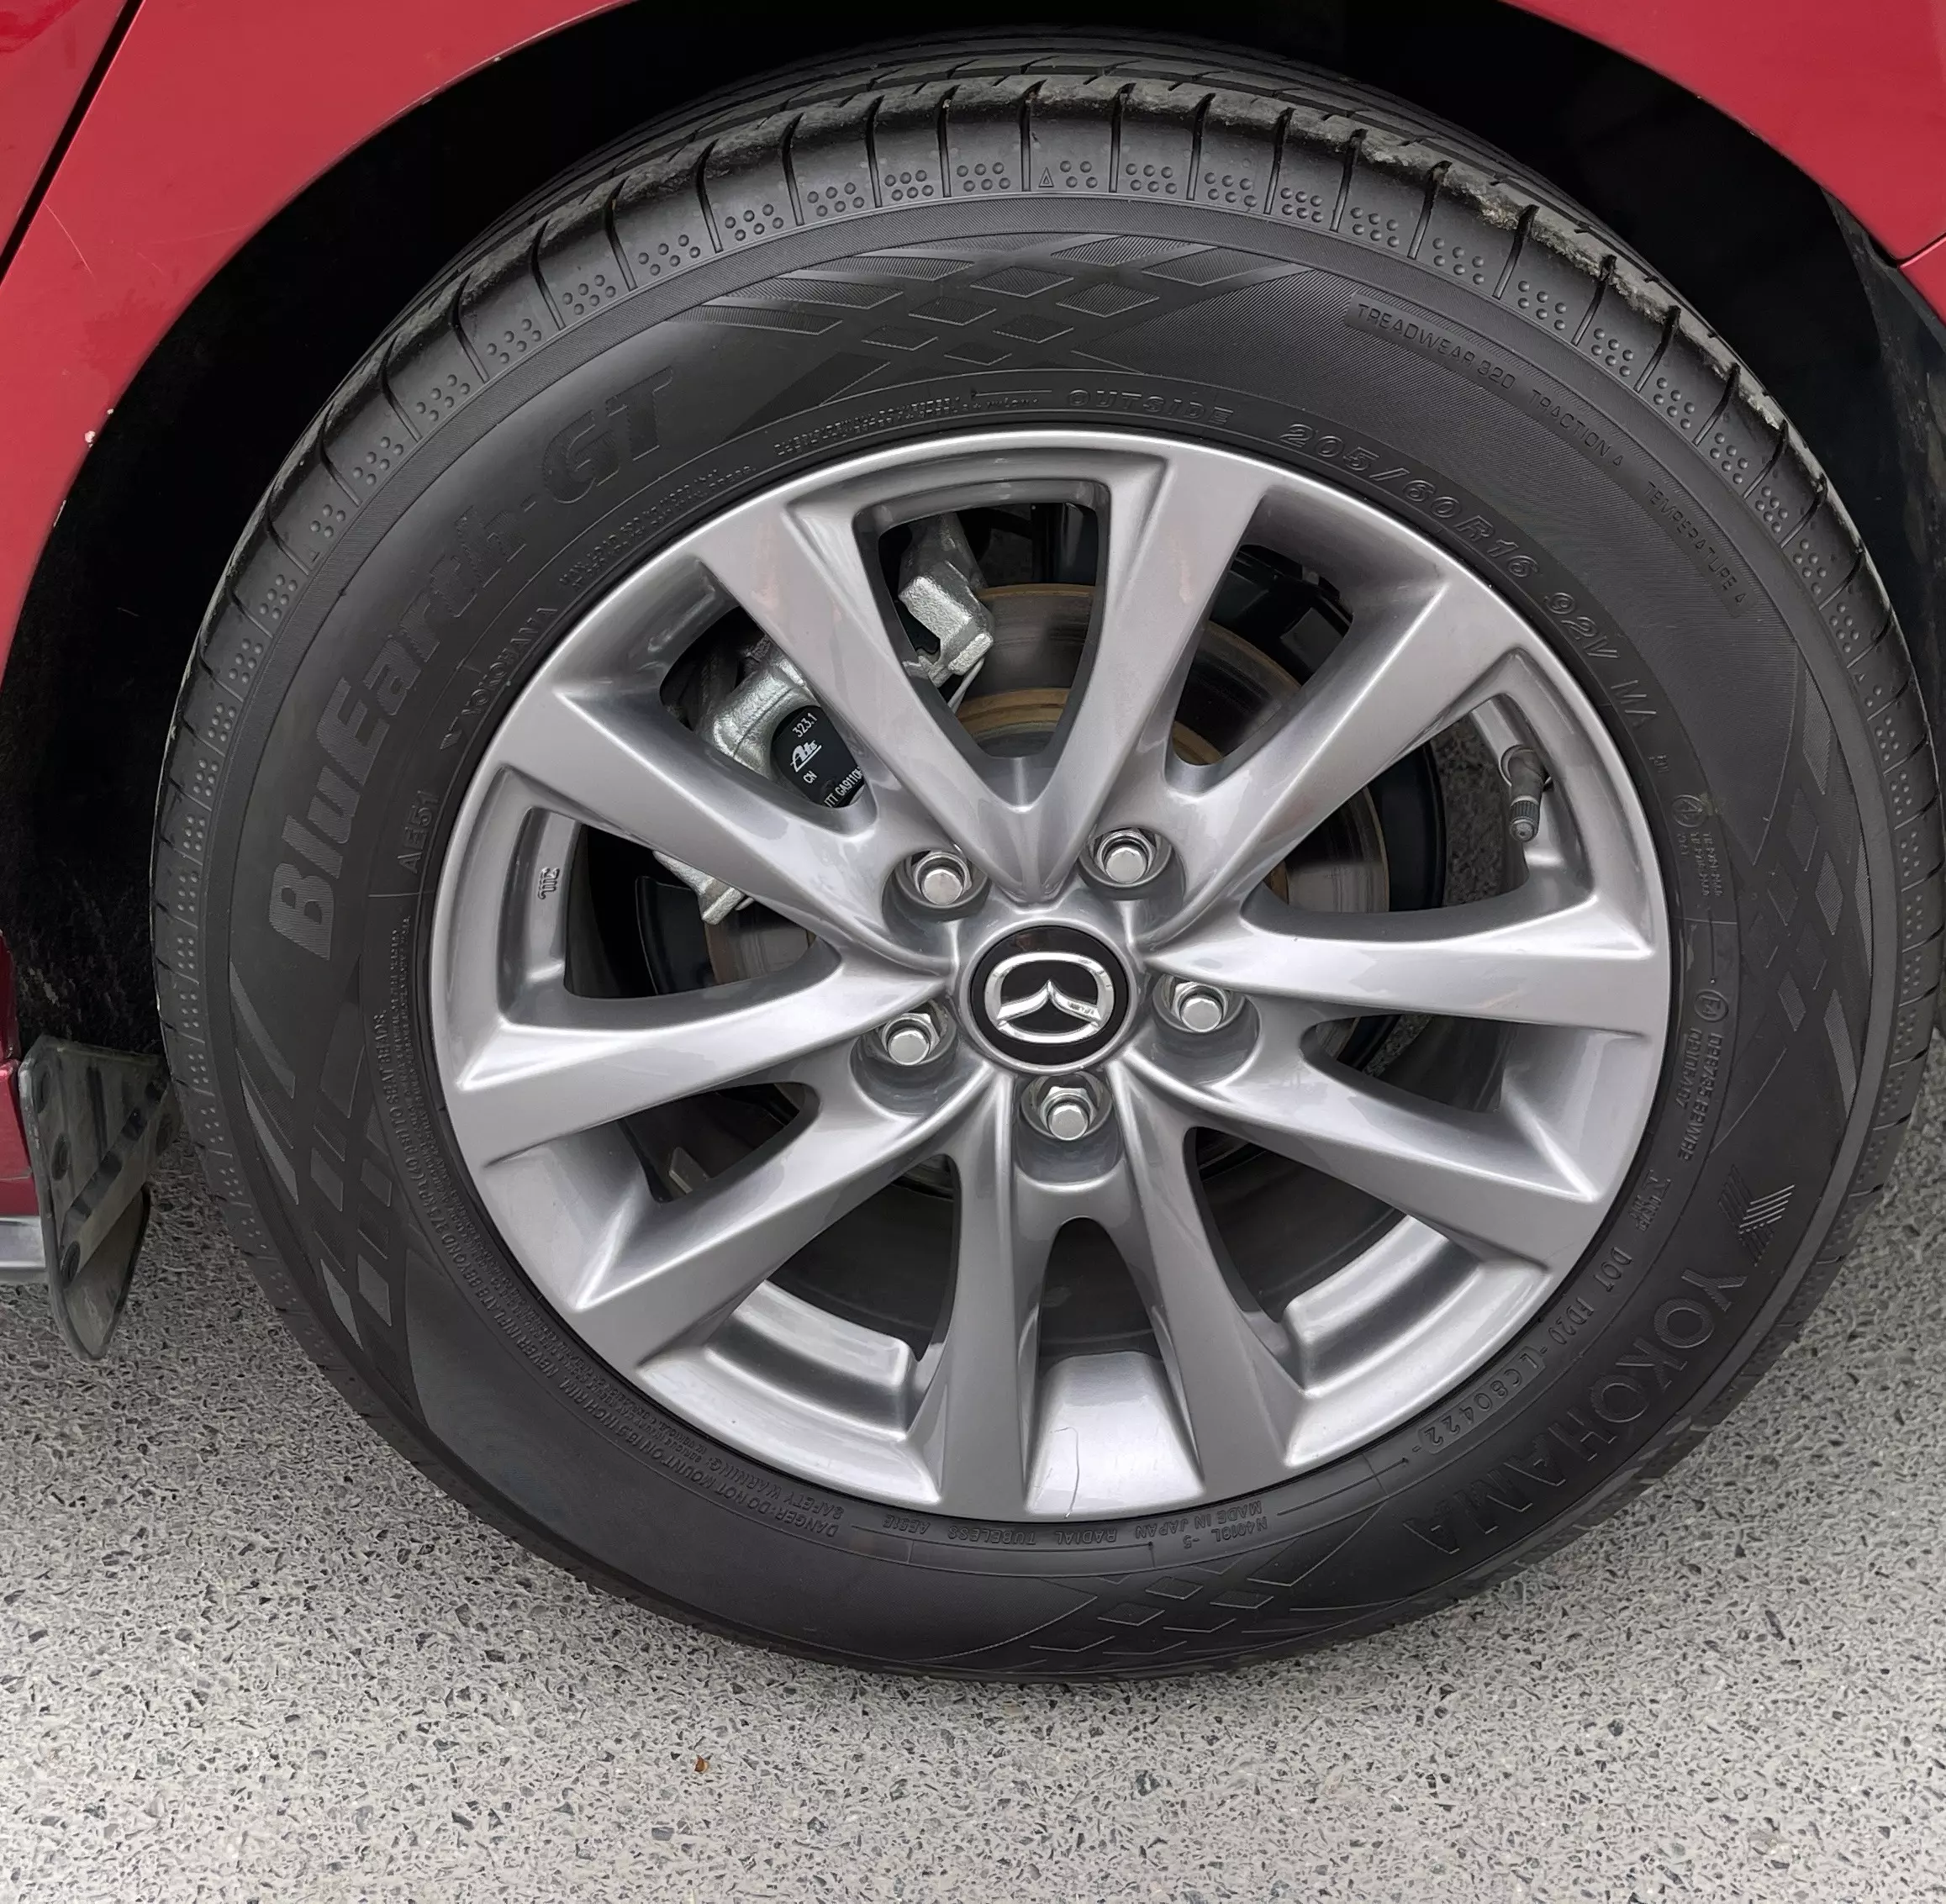 Chính chủ cần bán xe Mazda 3-1.5 luxury đỏ phale -3